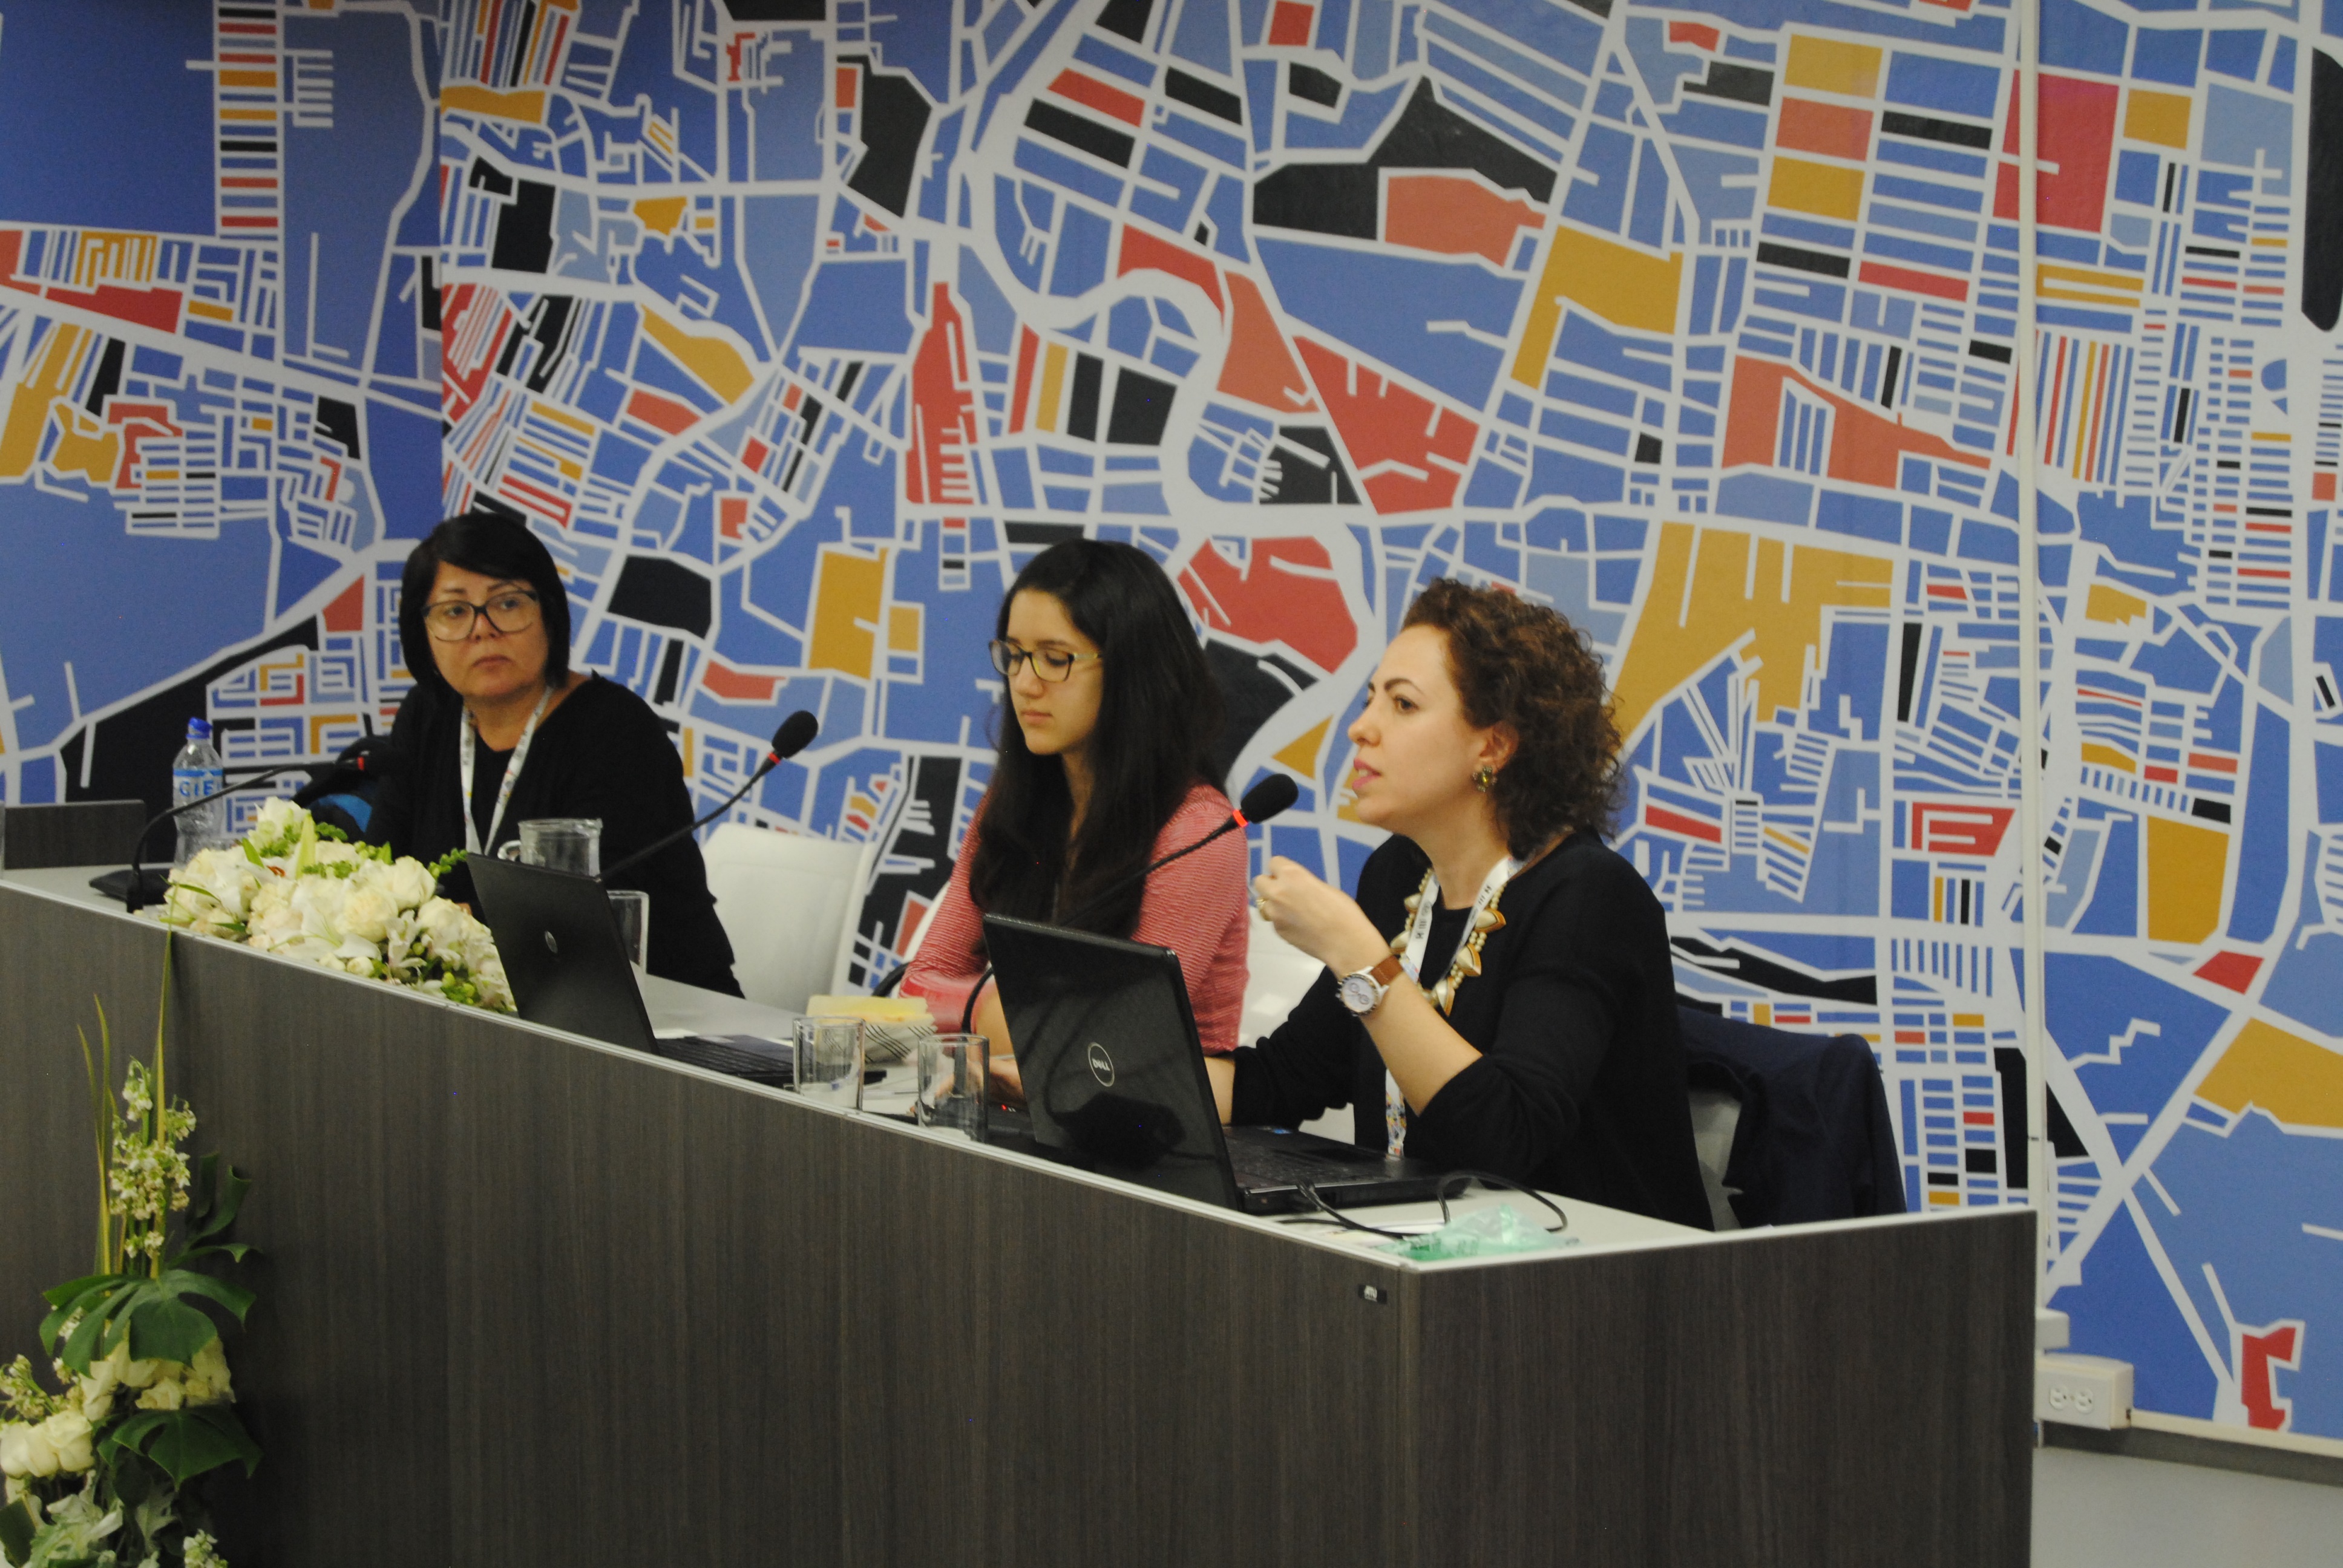 foto das colaboradoras RAPS Camila Salvatore e Juliana Freire conduzindo a apresentação na Conferência.